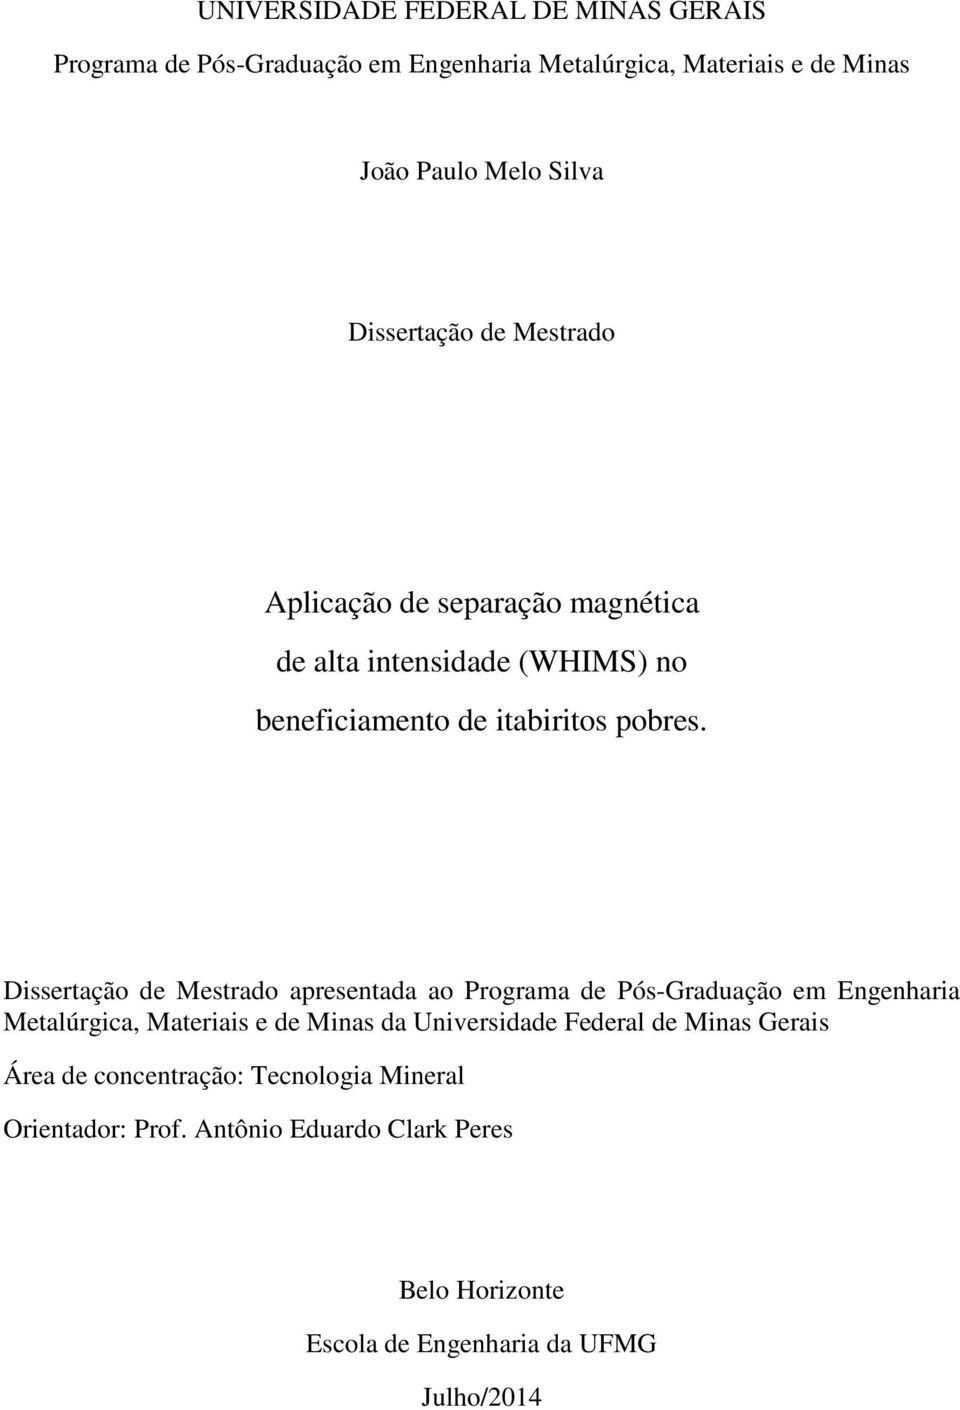 Dissertação de Mestrado apresentada ao Programa de Pós-Graduação em Engenharia Metalúrgica, Materiais e de Minas da Universidade Federal